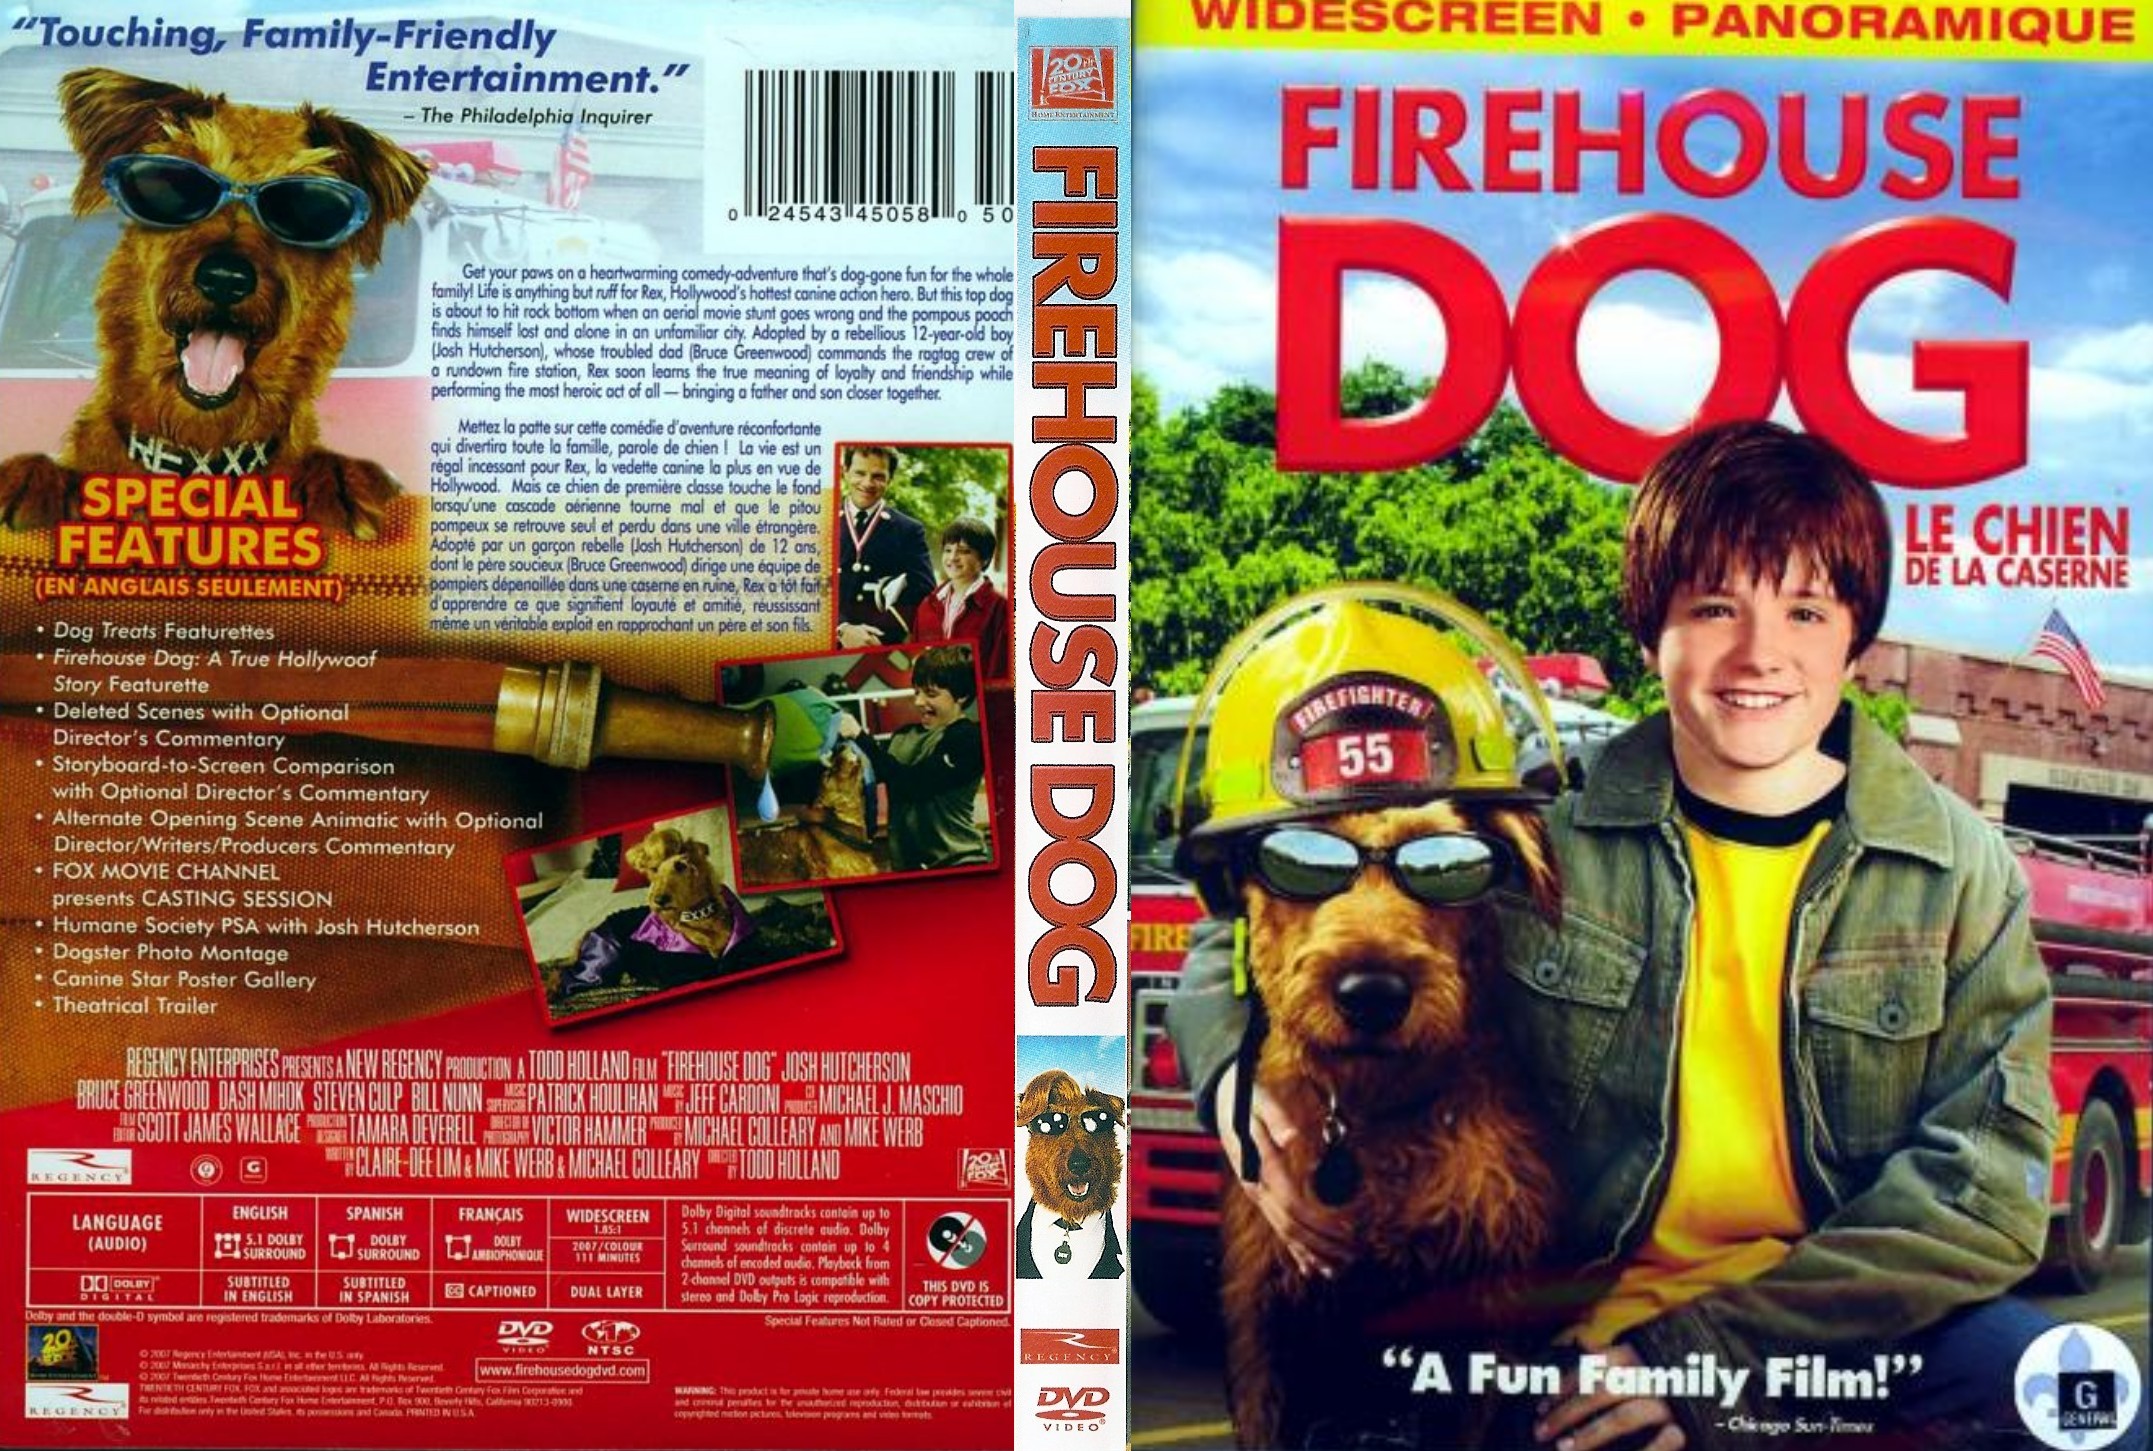 Jaquette DVD Le chien de la caserne